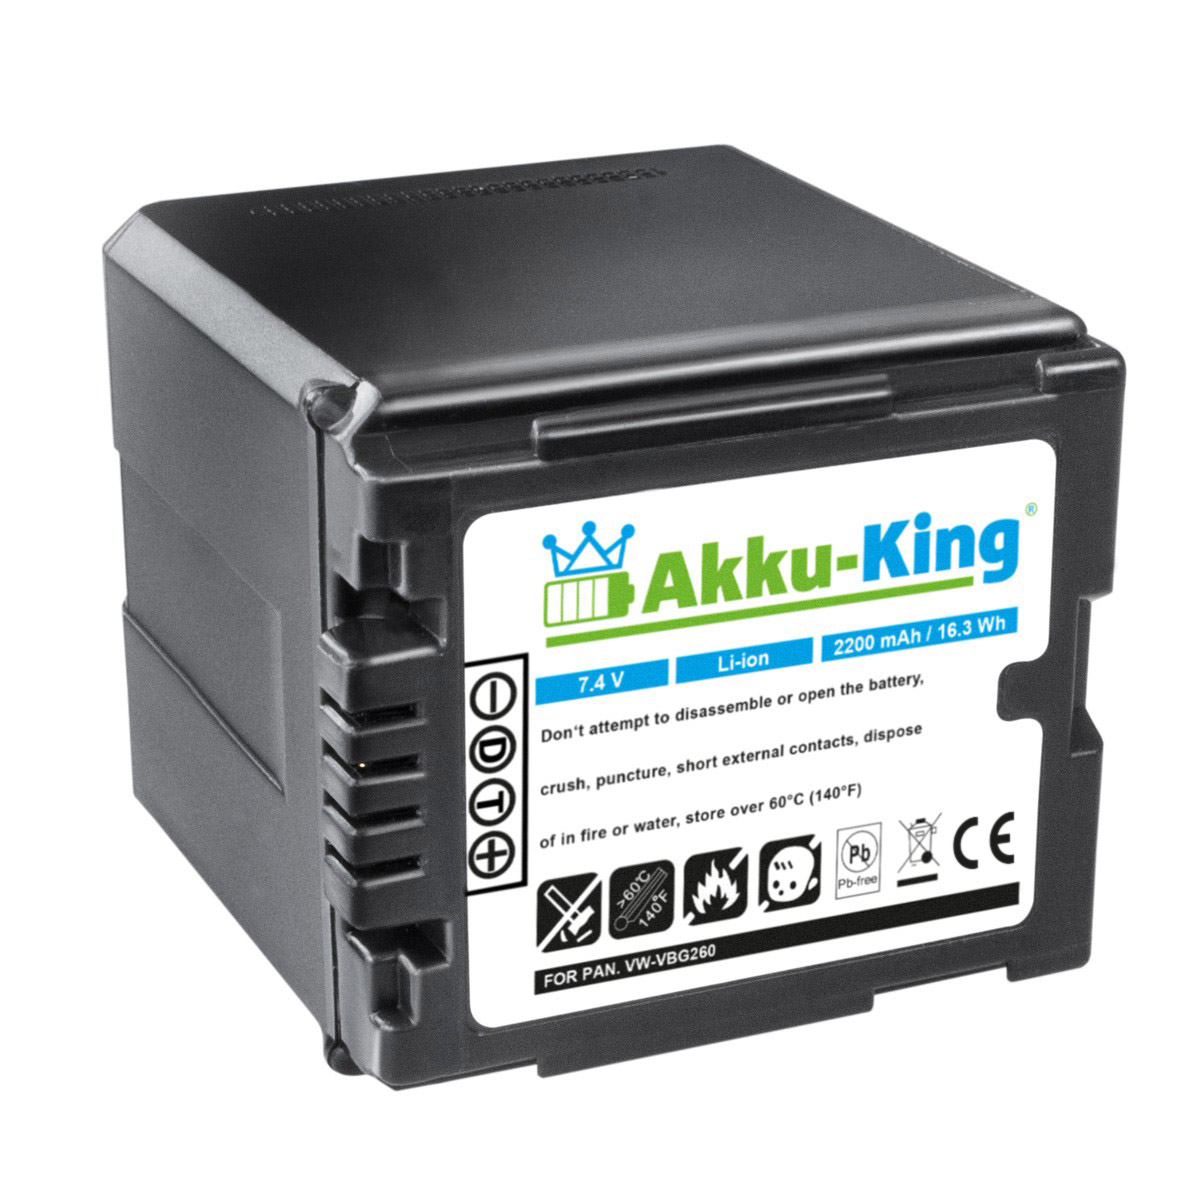 AKKU-KING Akku kompatibel mit Panasonic 2200mAh Li-Ion VW-VBG260 Volt, Kamera-Akku, 7.4